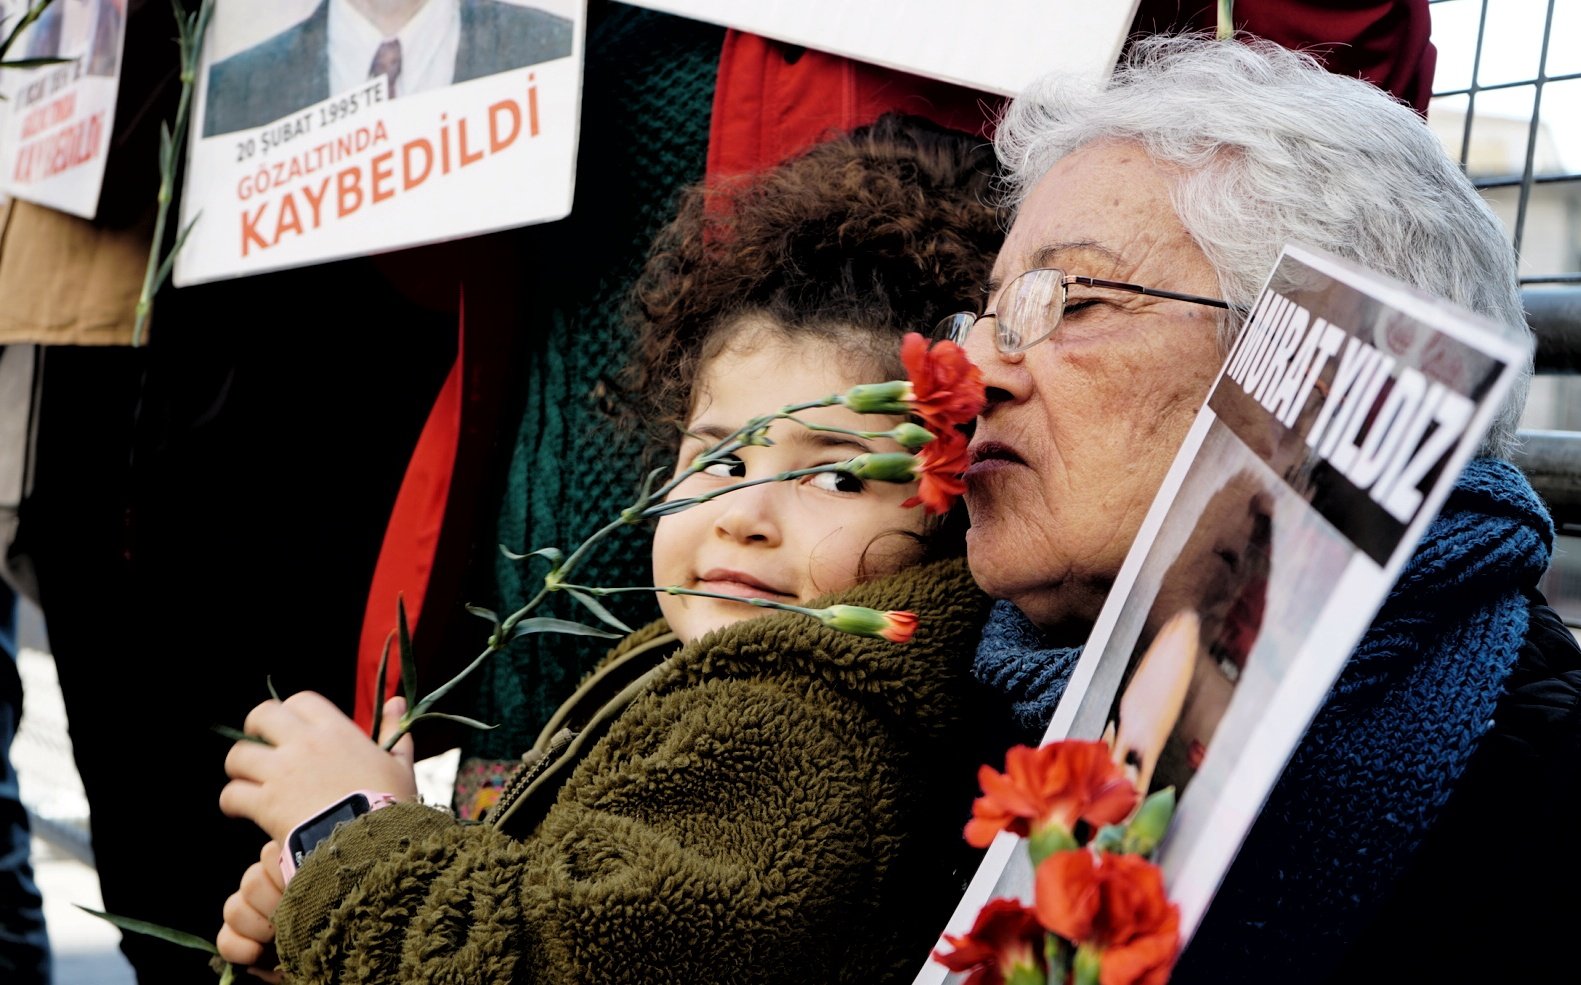 Cumartesi Anneleri/İnsanları 987. hafta buluşmalarında 29 yıl önce İzmir Bornova Özkanlar Asayiş Şubesi’nde kaybedilen Murat Yıldız için talep etti. Fotoğrafta Yıldız’ın annesi Hanife Yıldız görülüyor.